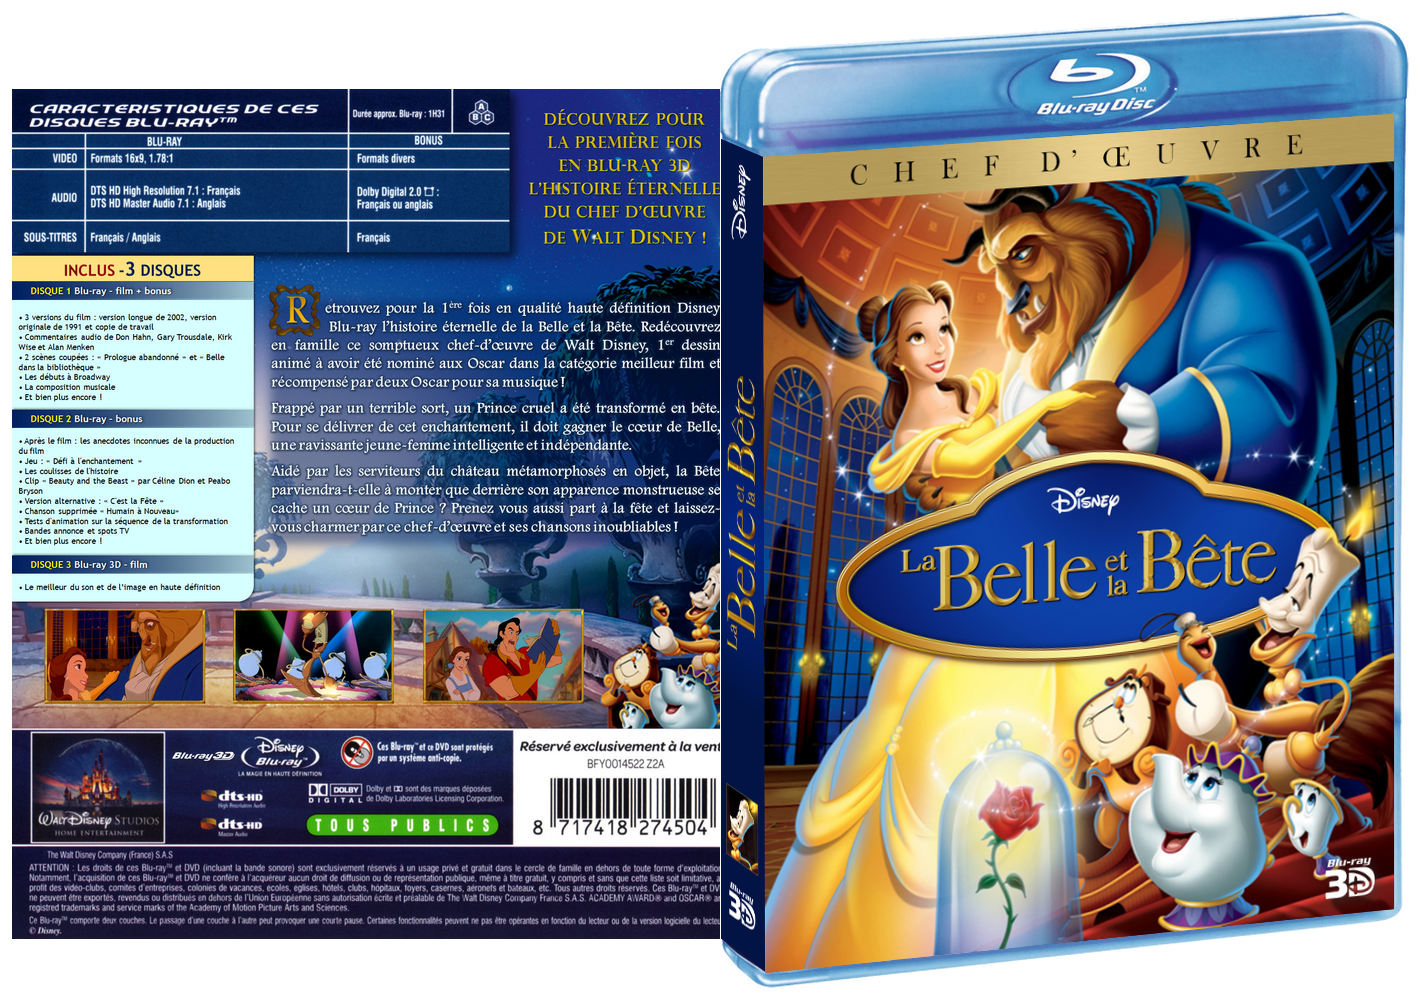 Les jaquettes de fans (DVD, Blu-ray) - Page 10 Belle-et-la-bete_bluray3D+3